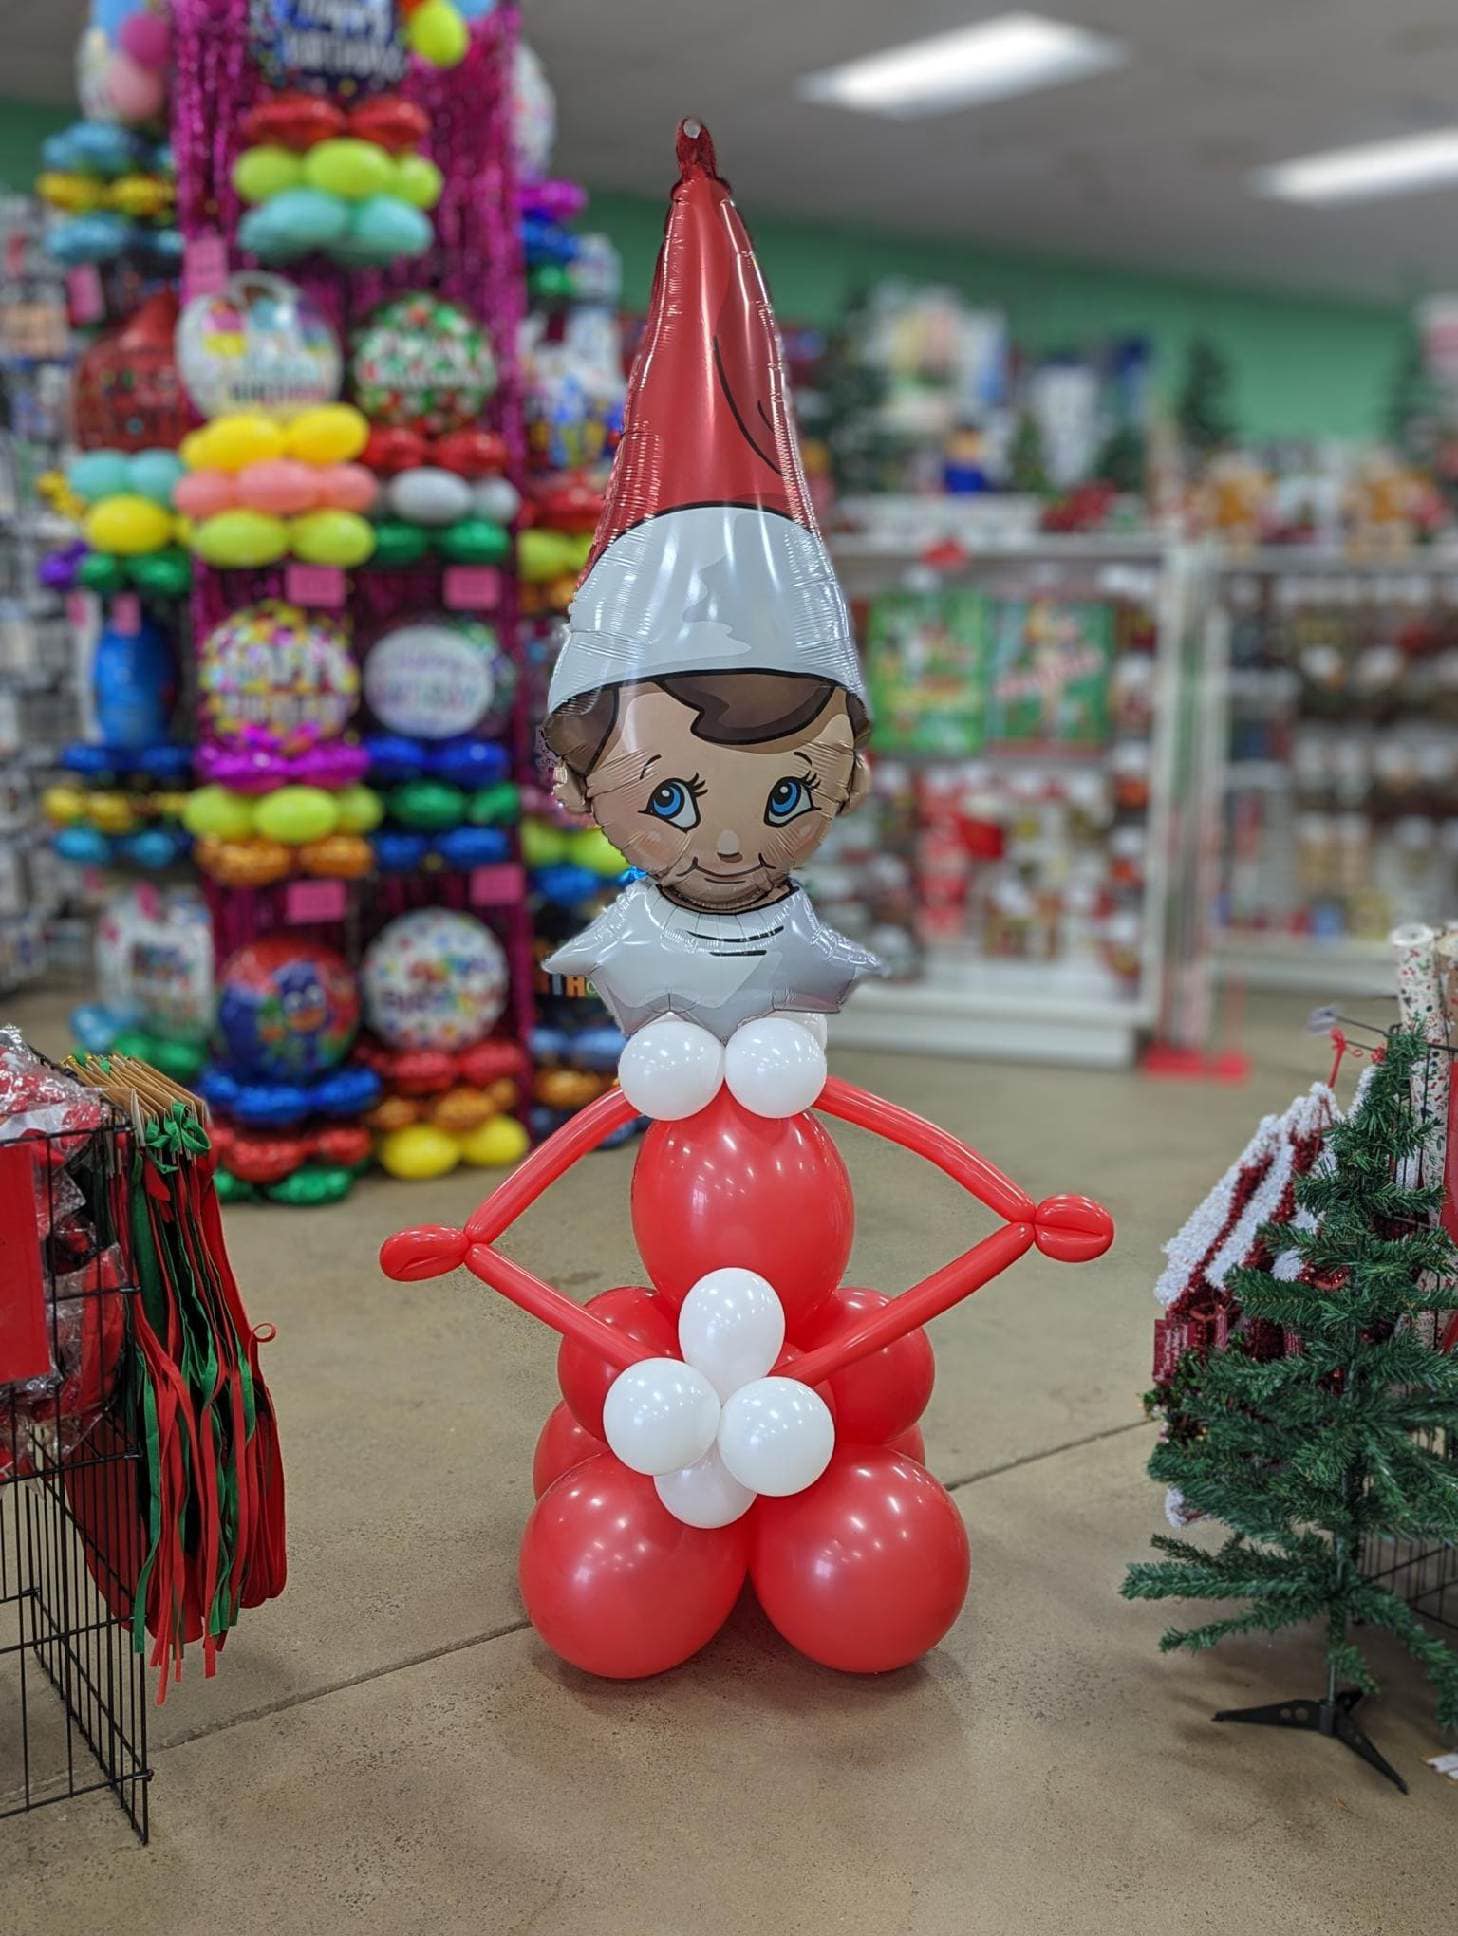 3 Foot Elf on the Shelf Balloon Friend - POPPartyballoons